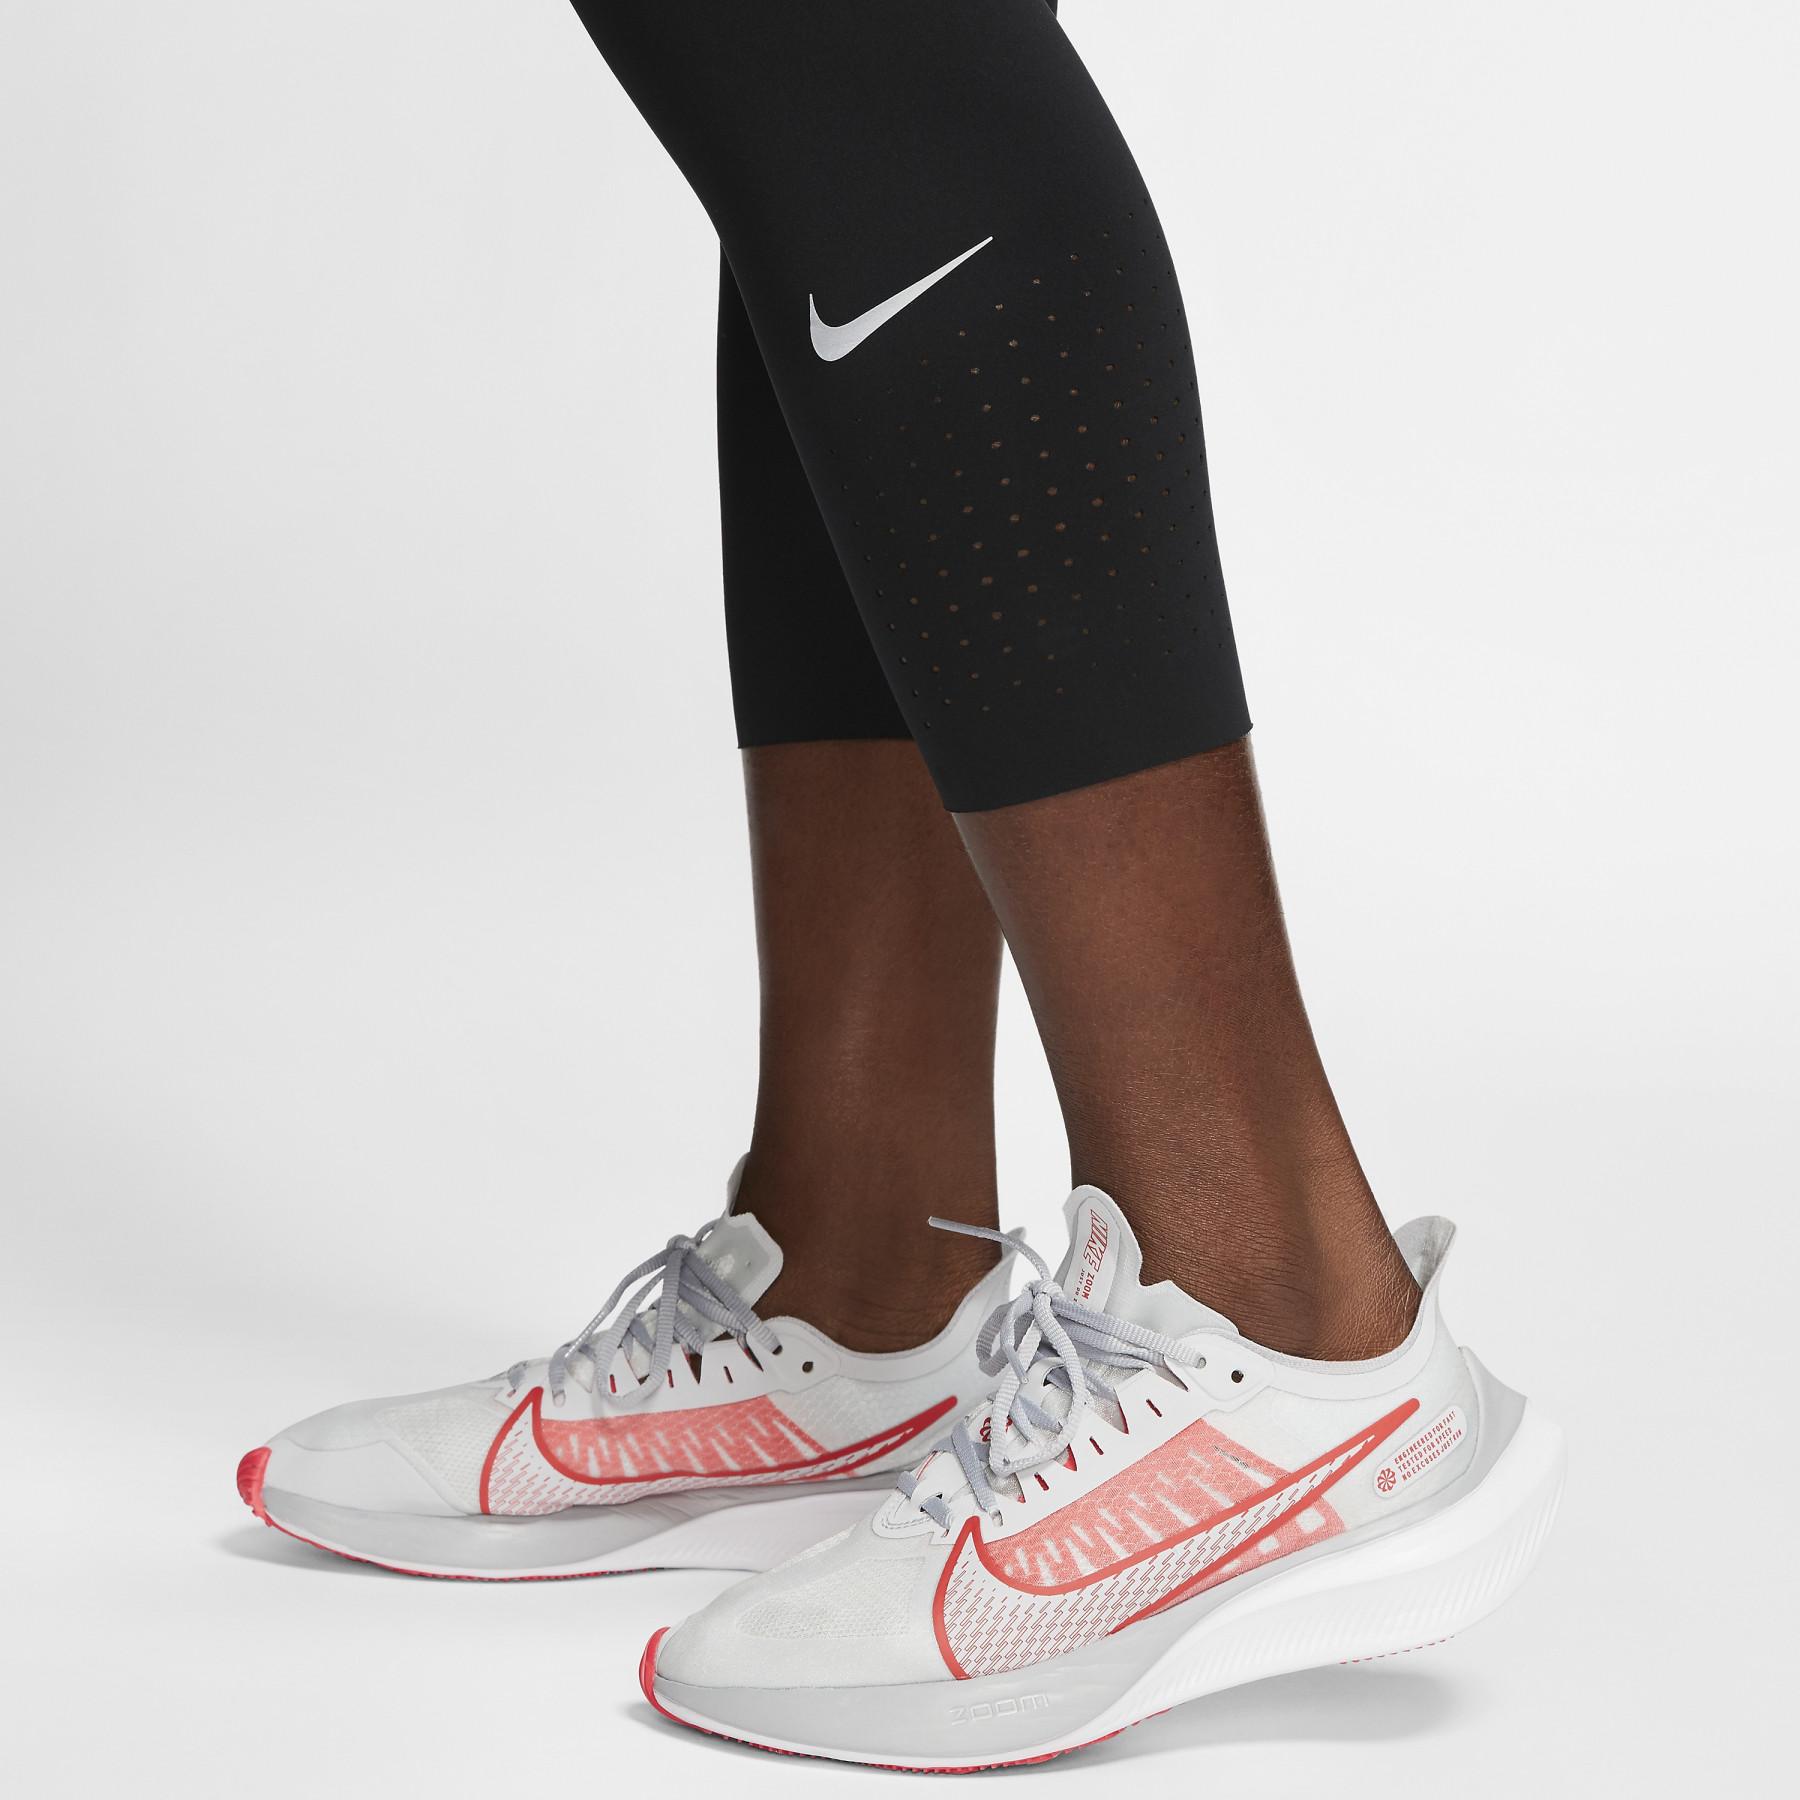 Pantaloni da donna Nike Lux